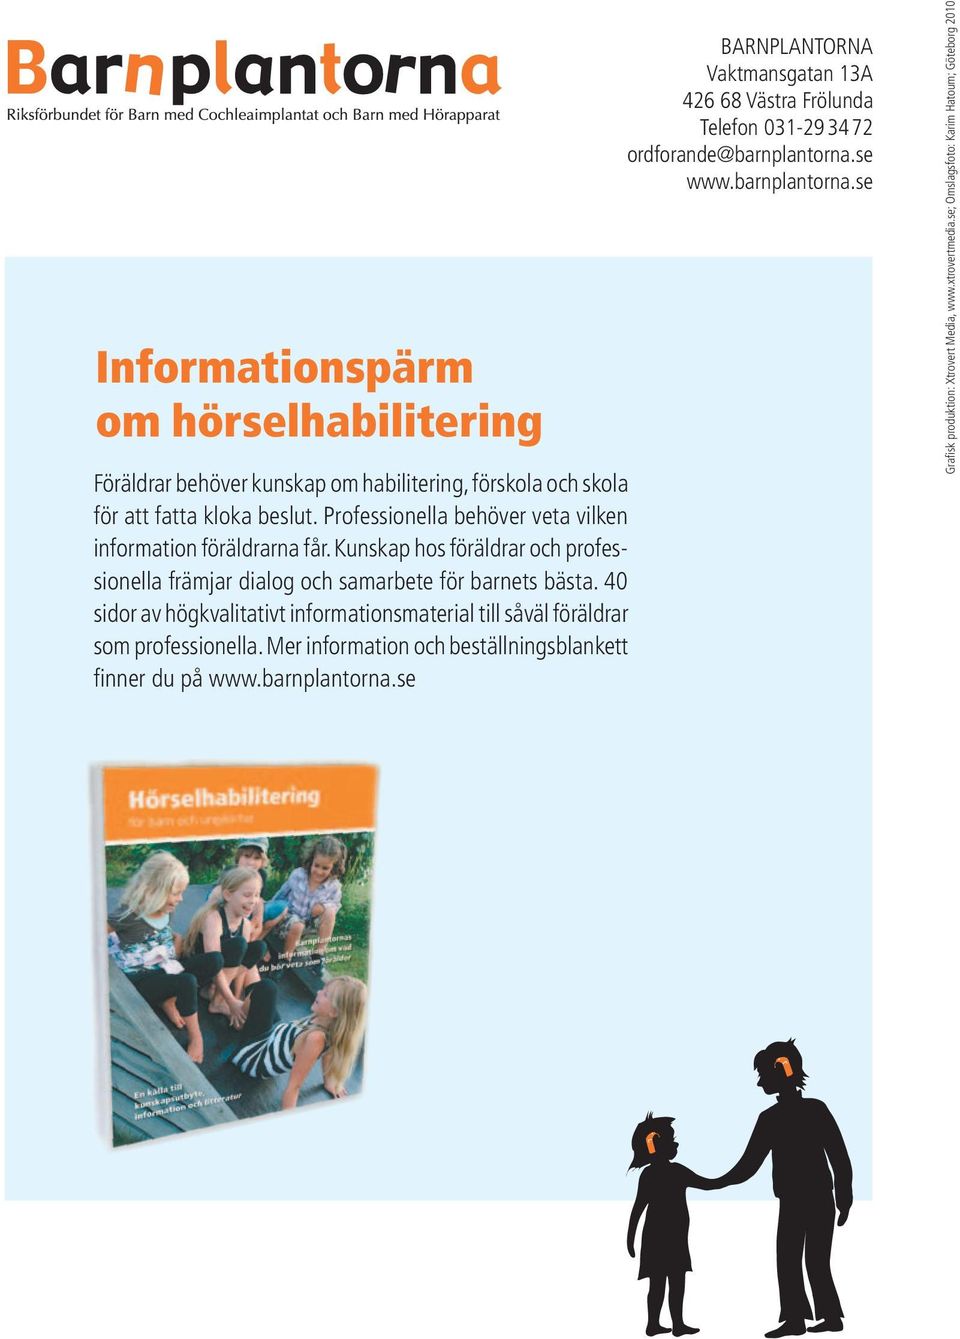 40 sidor av högkvalitativt informationsmaterial till såväl föräldrar som professionella. Mer information och beställningsblankett finner du på www.barnplantorna.